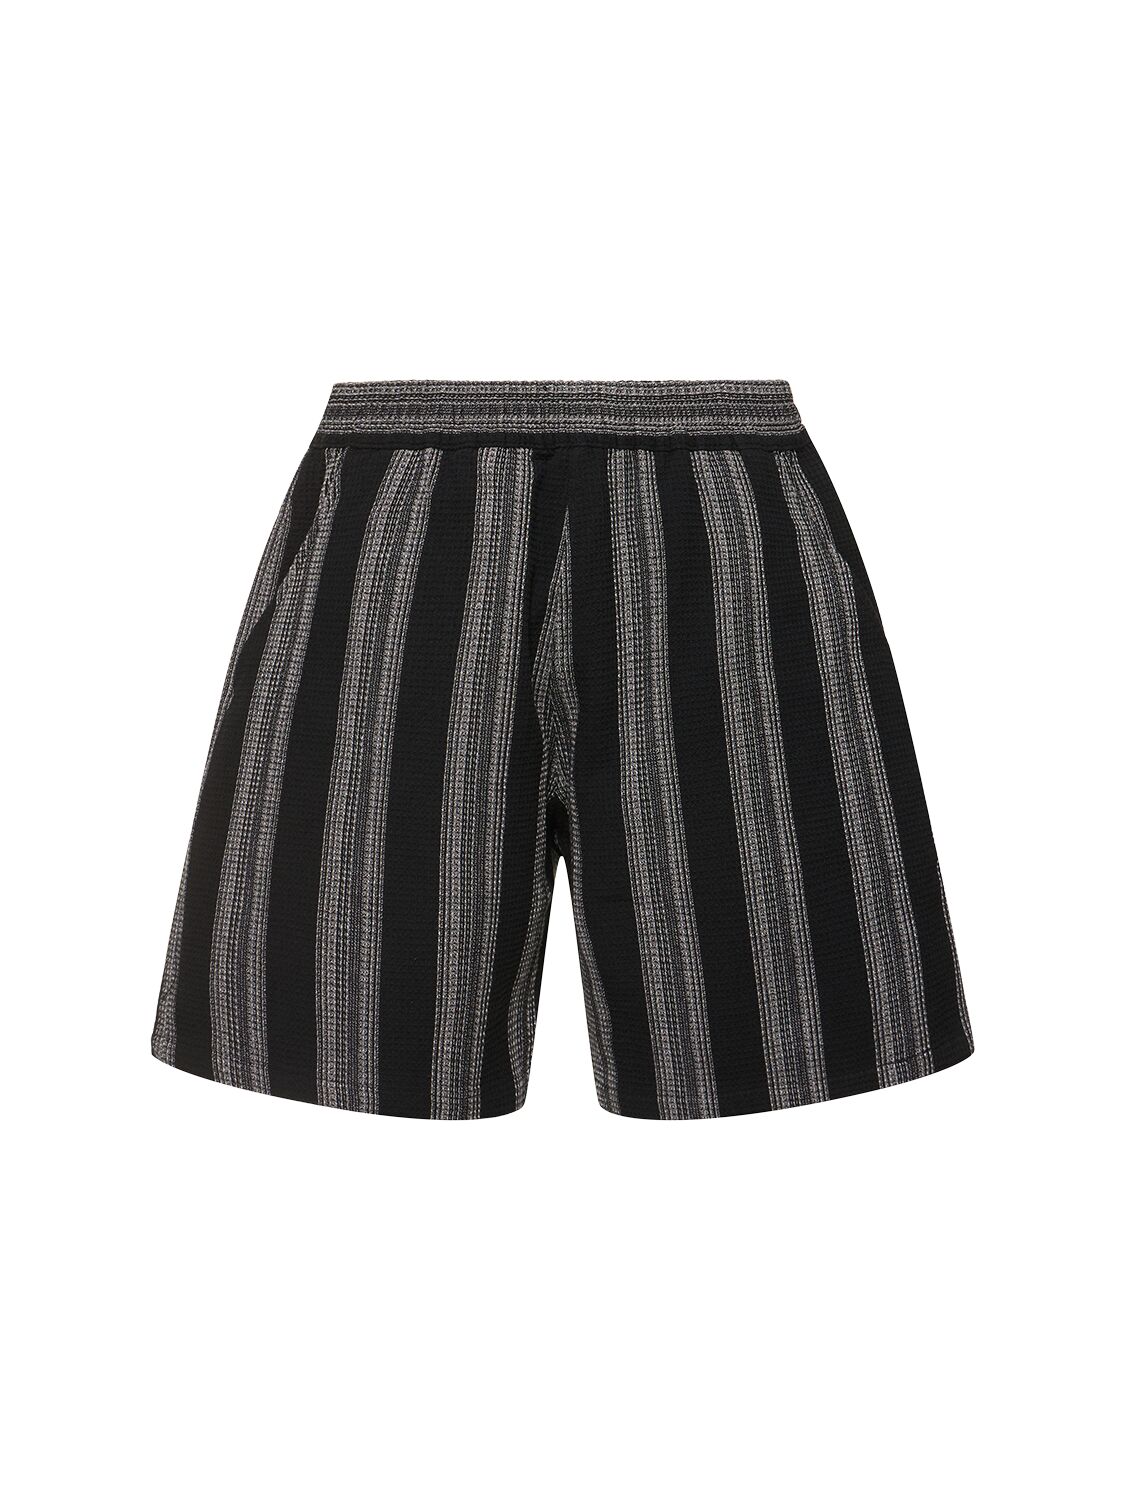 Carhartt Dodson Waffle Weave Tech Shorts In Black Stripe